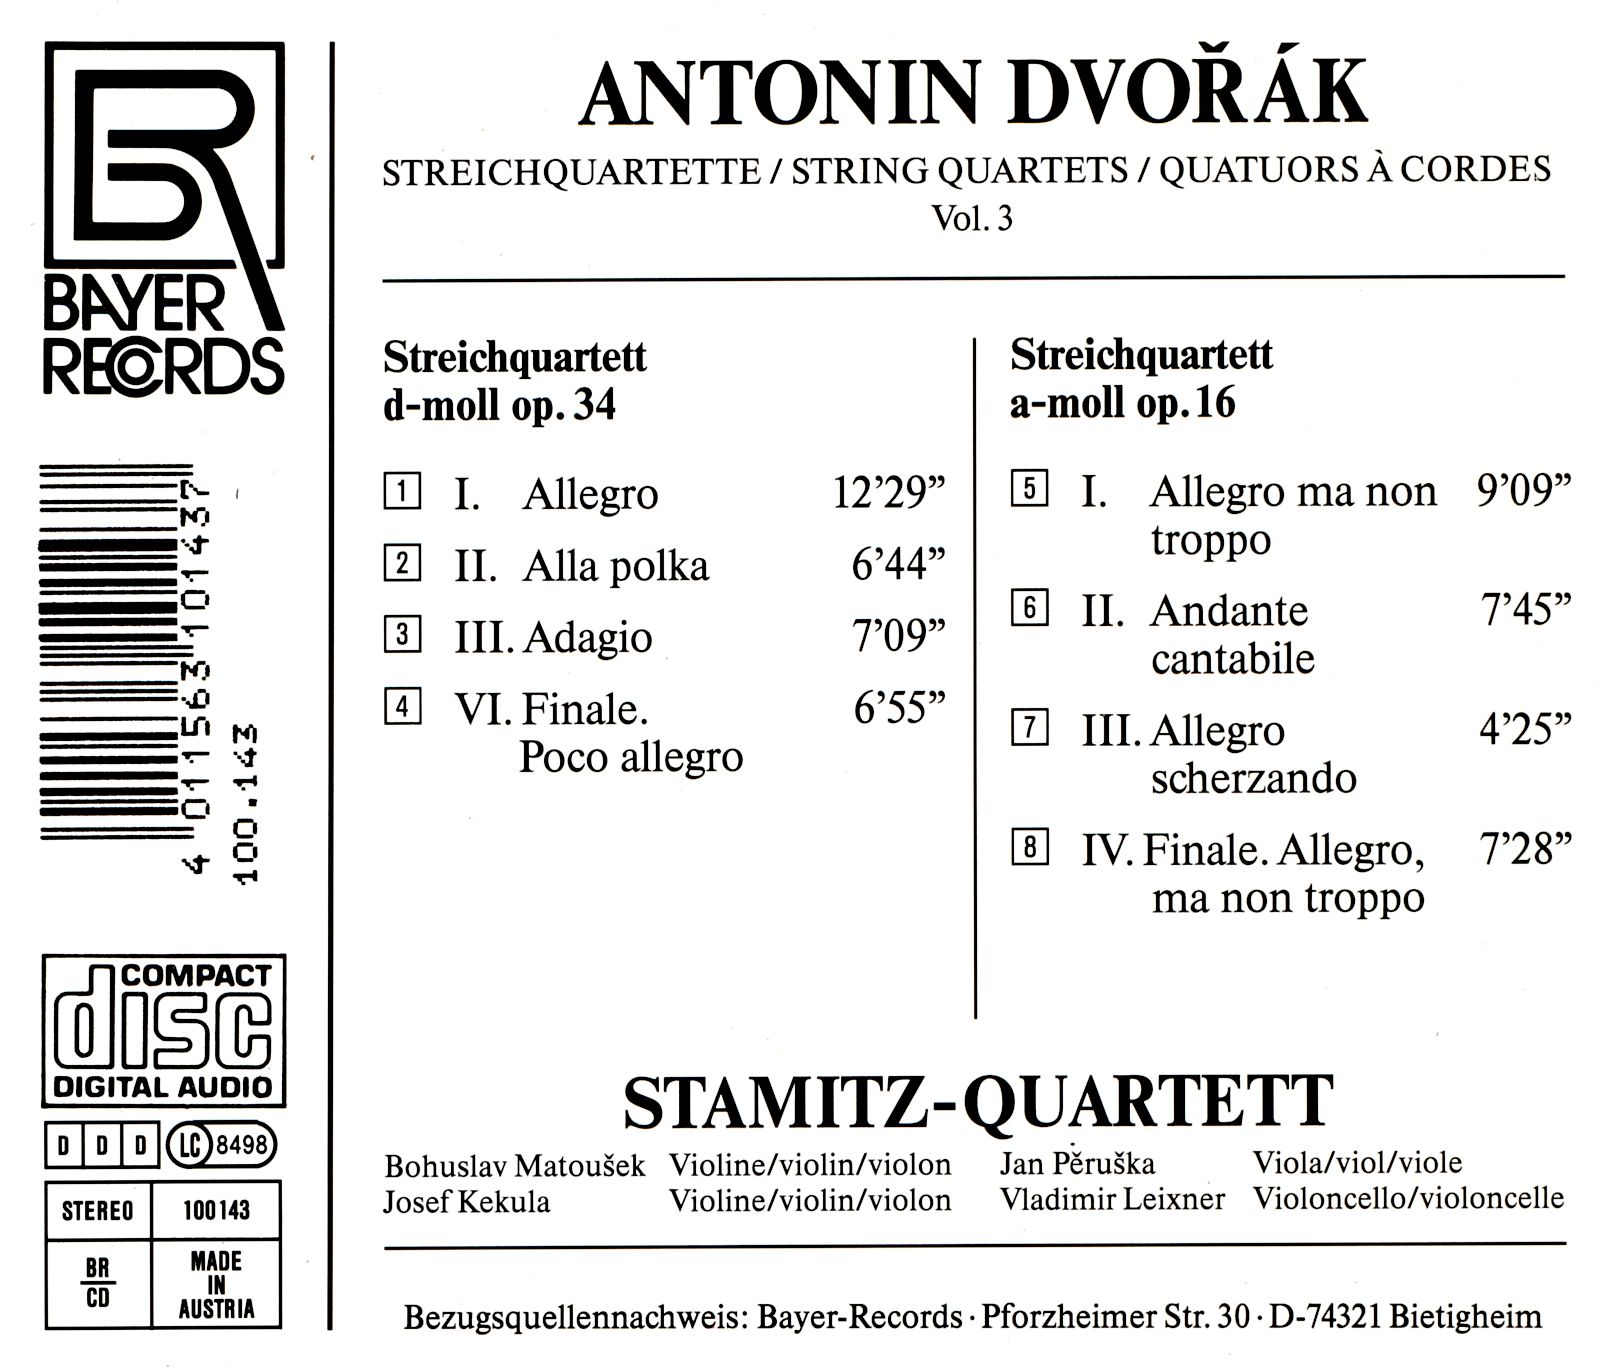 Antonin Dvorak - Streichquartette Vol.3